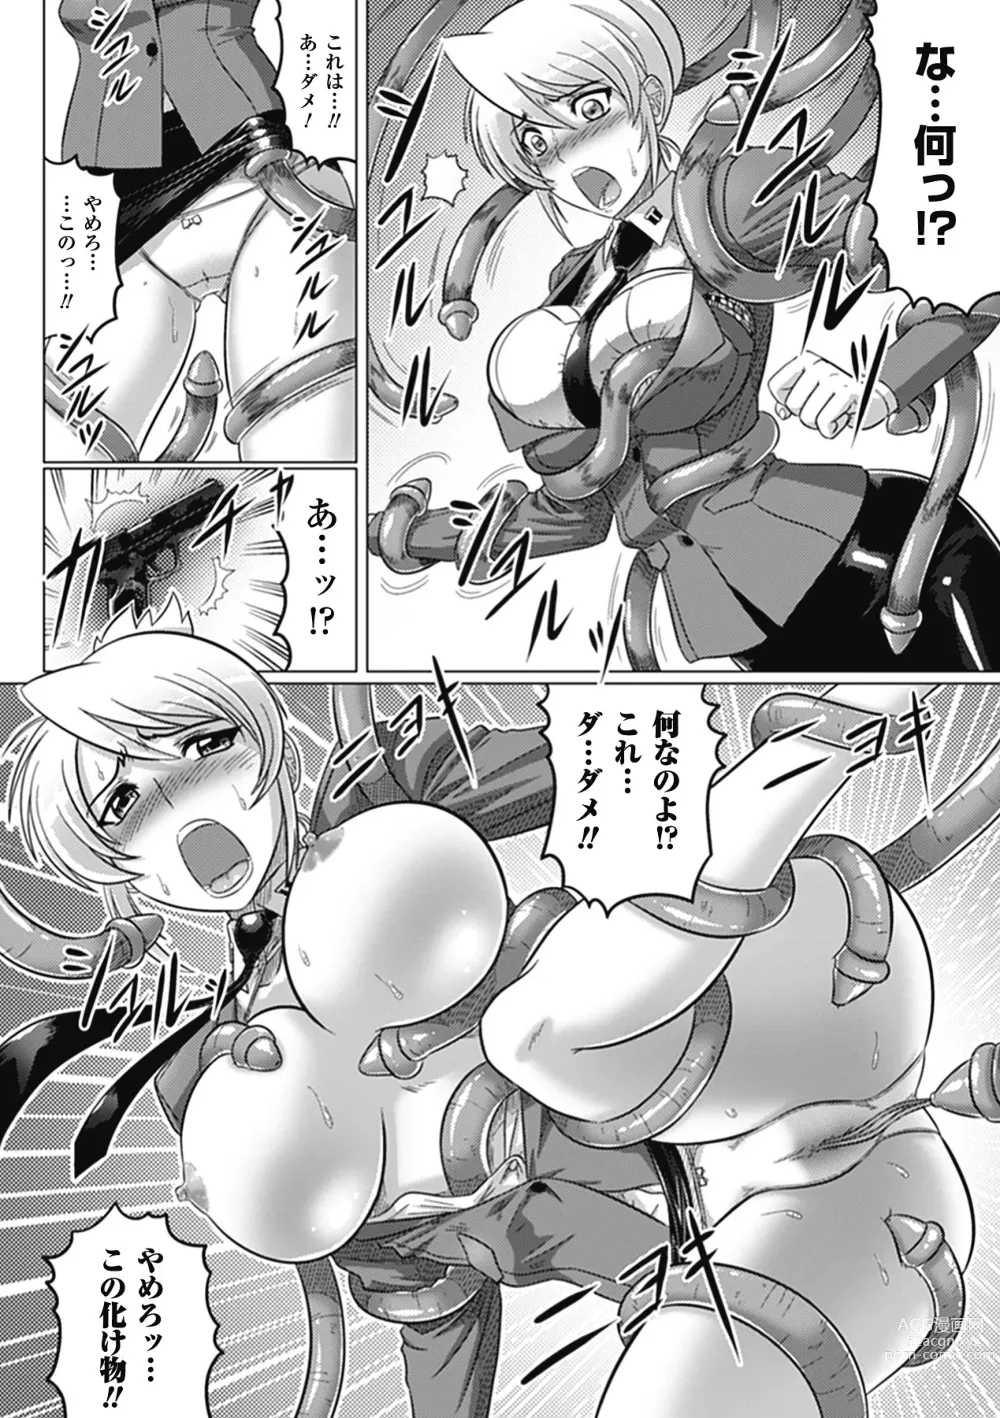 Page 176 of manga Ochita Tenshitachi no Zanei